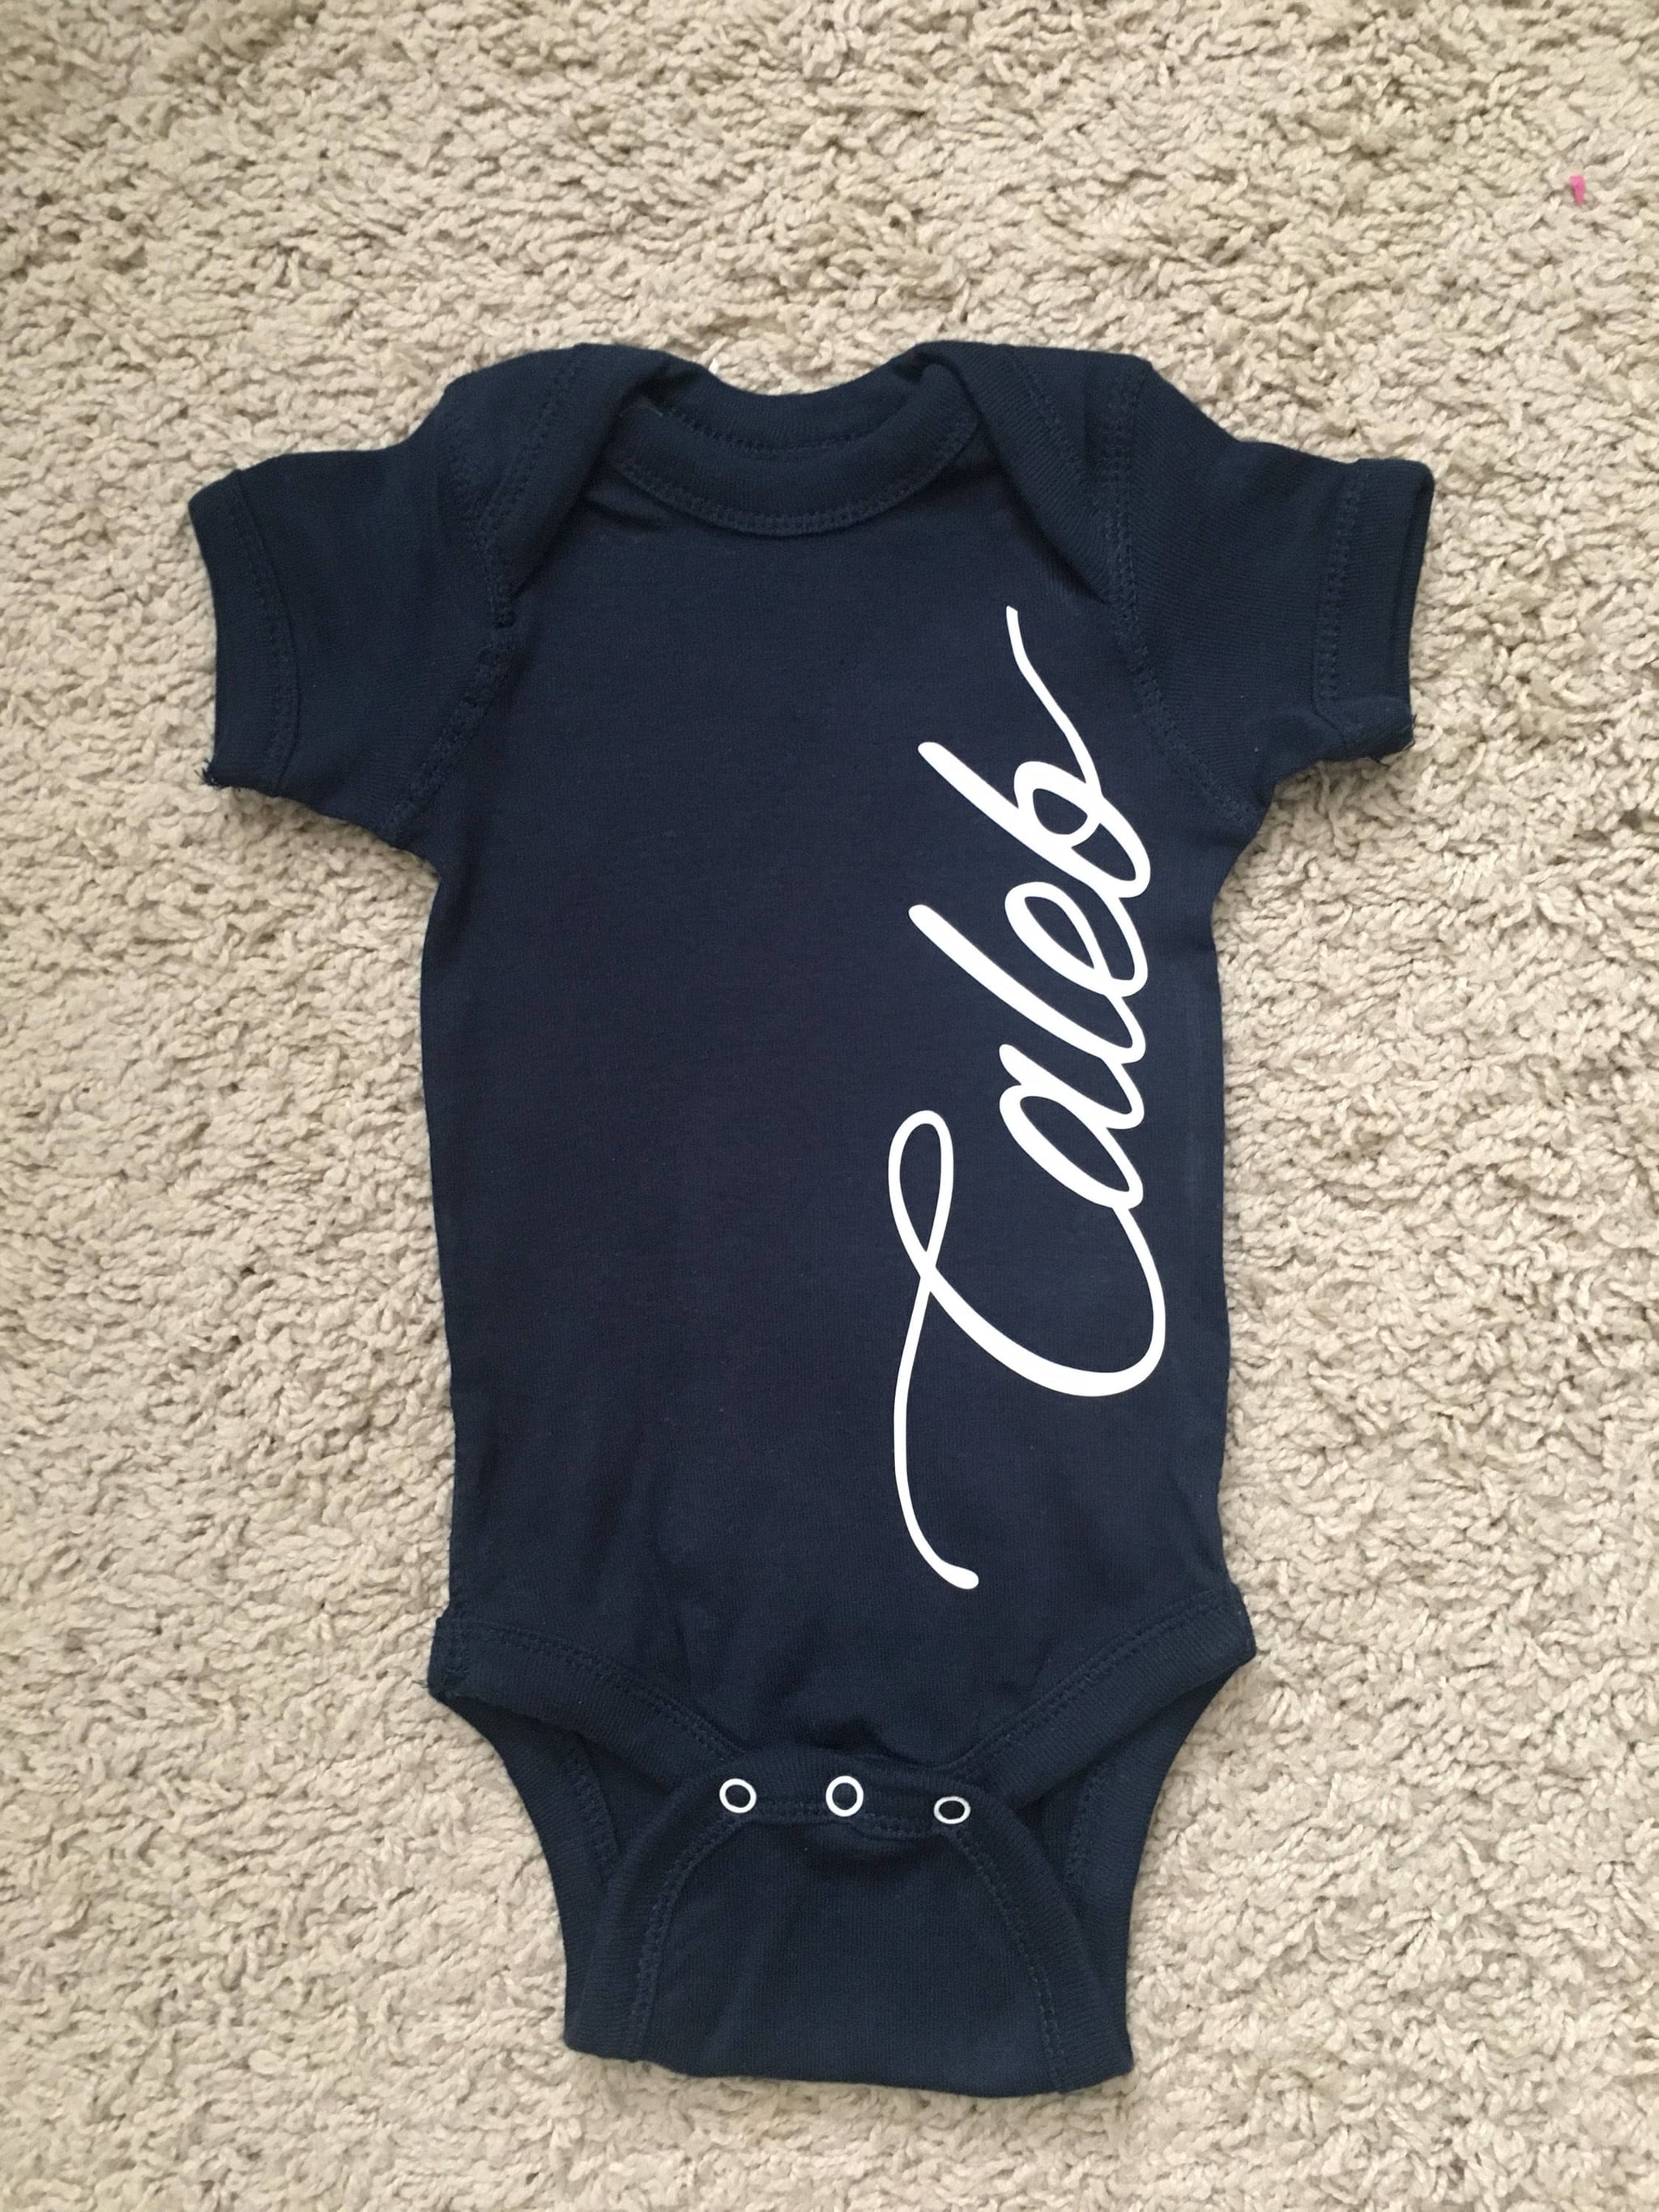 customized baby onesies